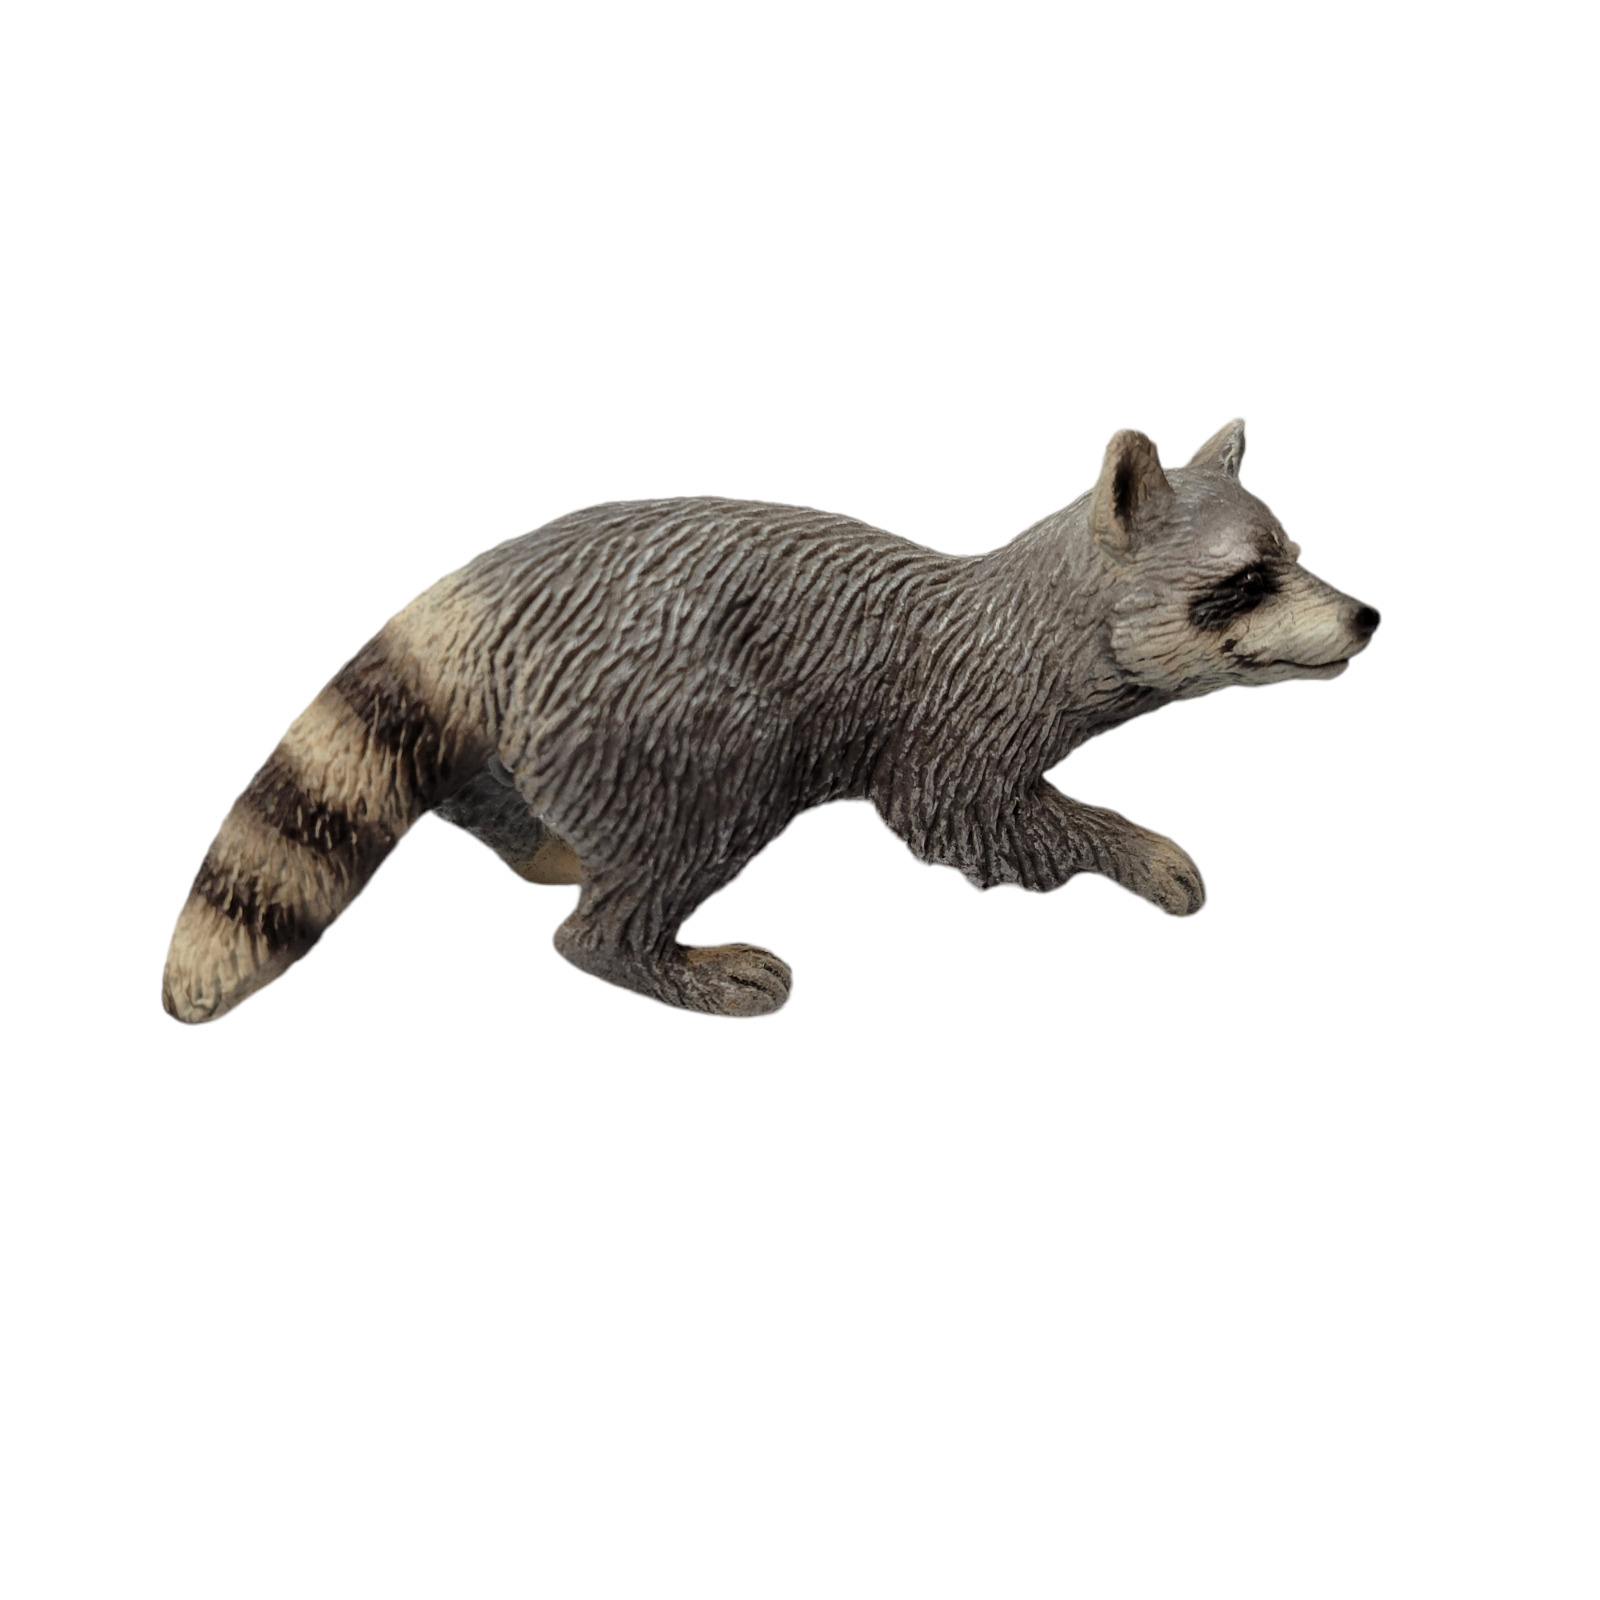 Schleich Am Lines Raccoon Figurine Retired # 14604 